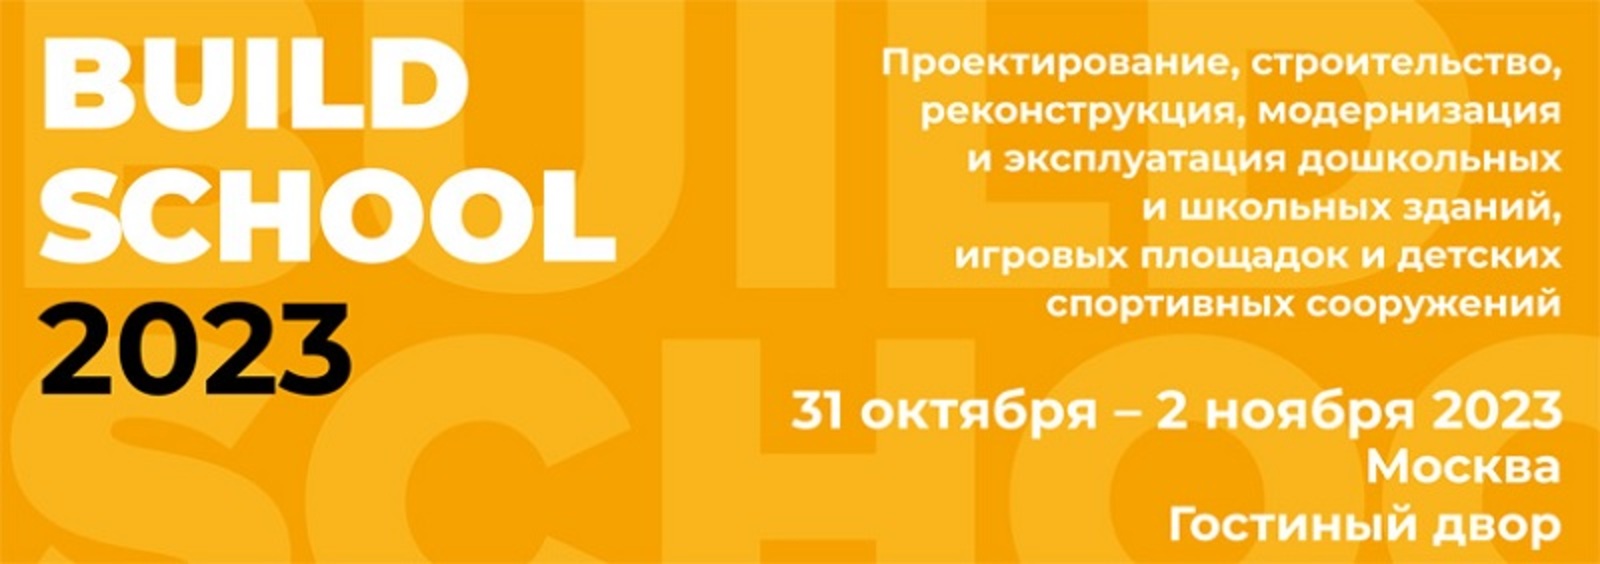 сайт конкурса Архитекторы Башкирии приглашаются на международный «школьный» конкурс